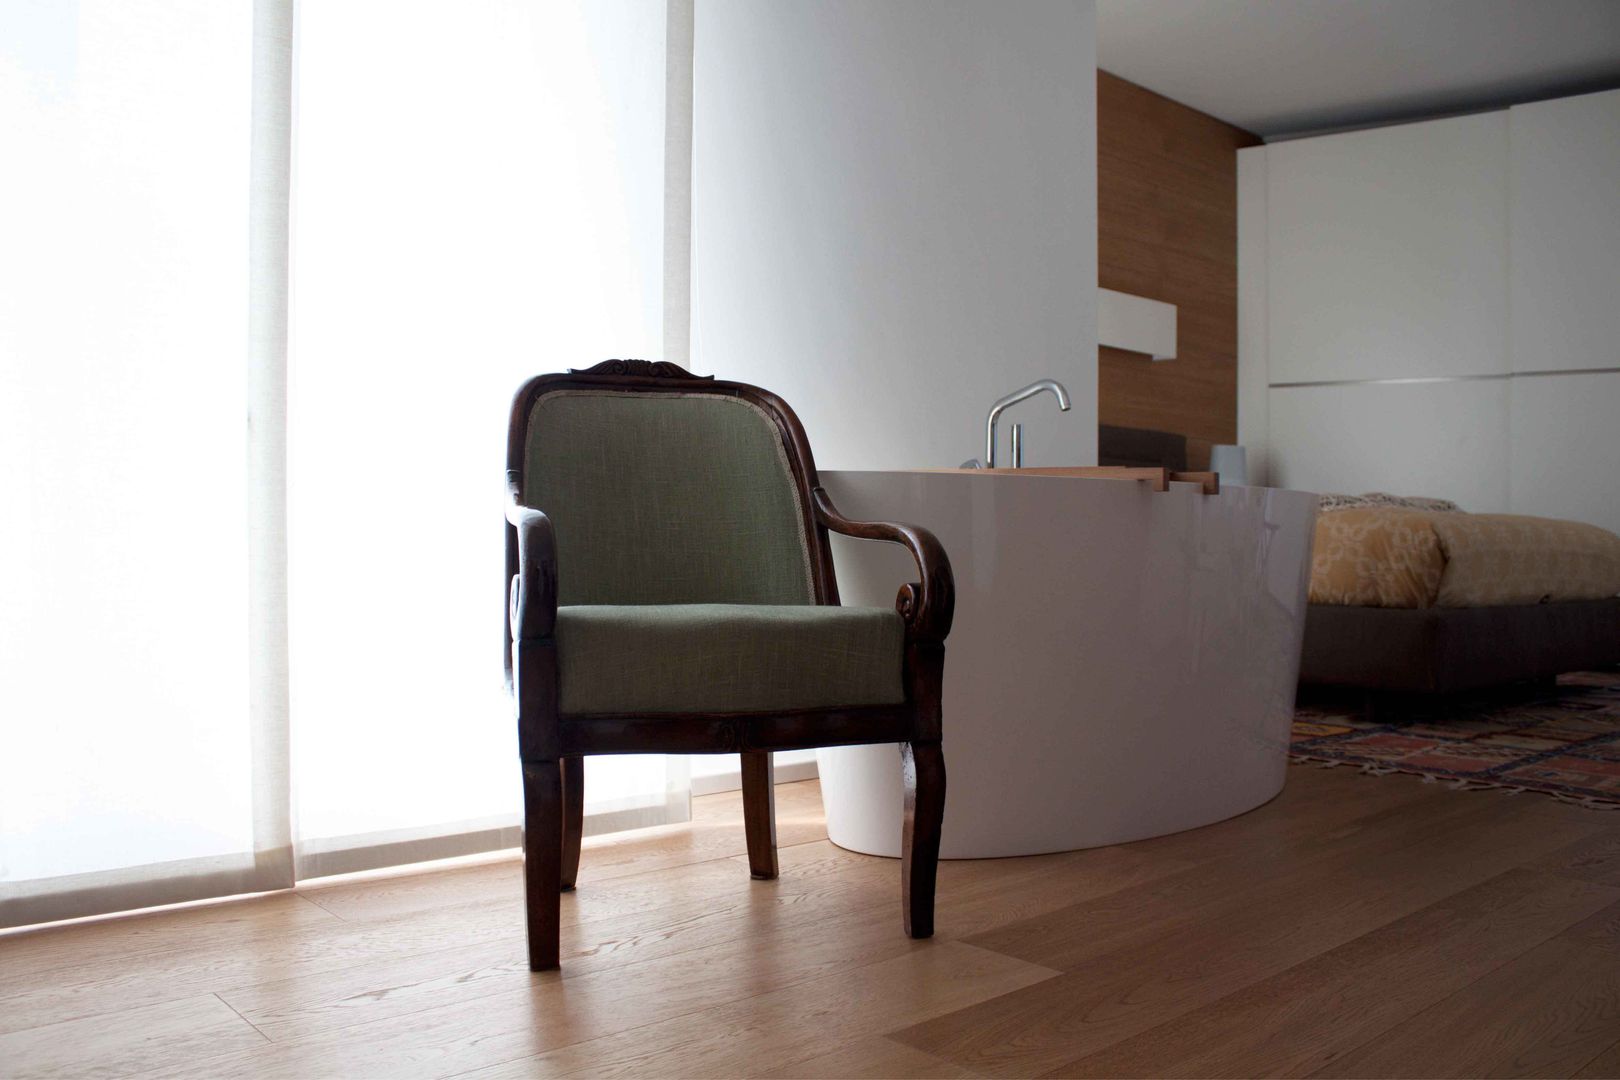 camera da letto davide petronici | architettura Camera da letto moderna